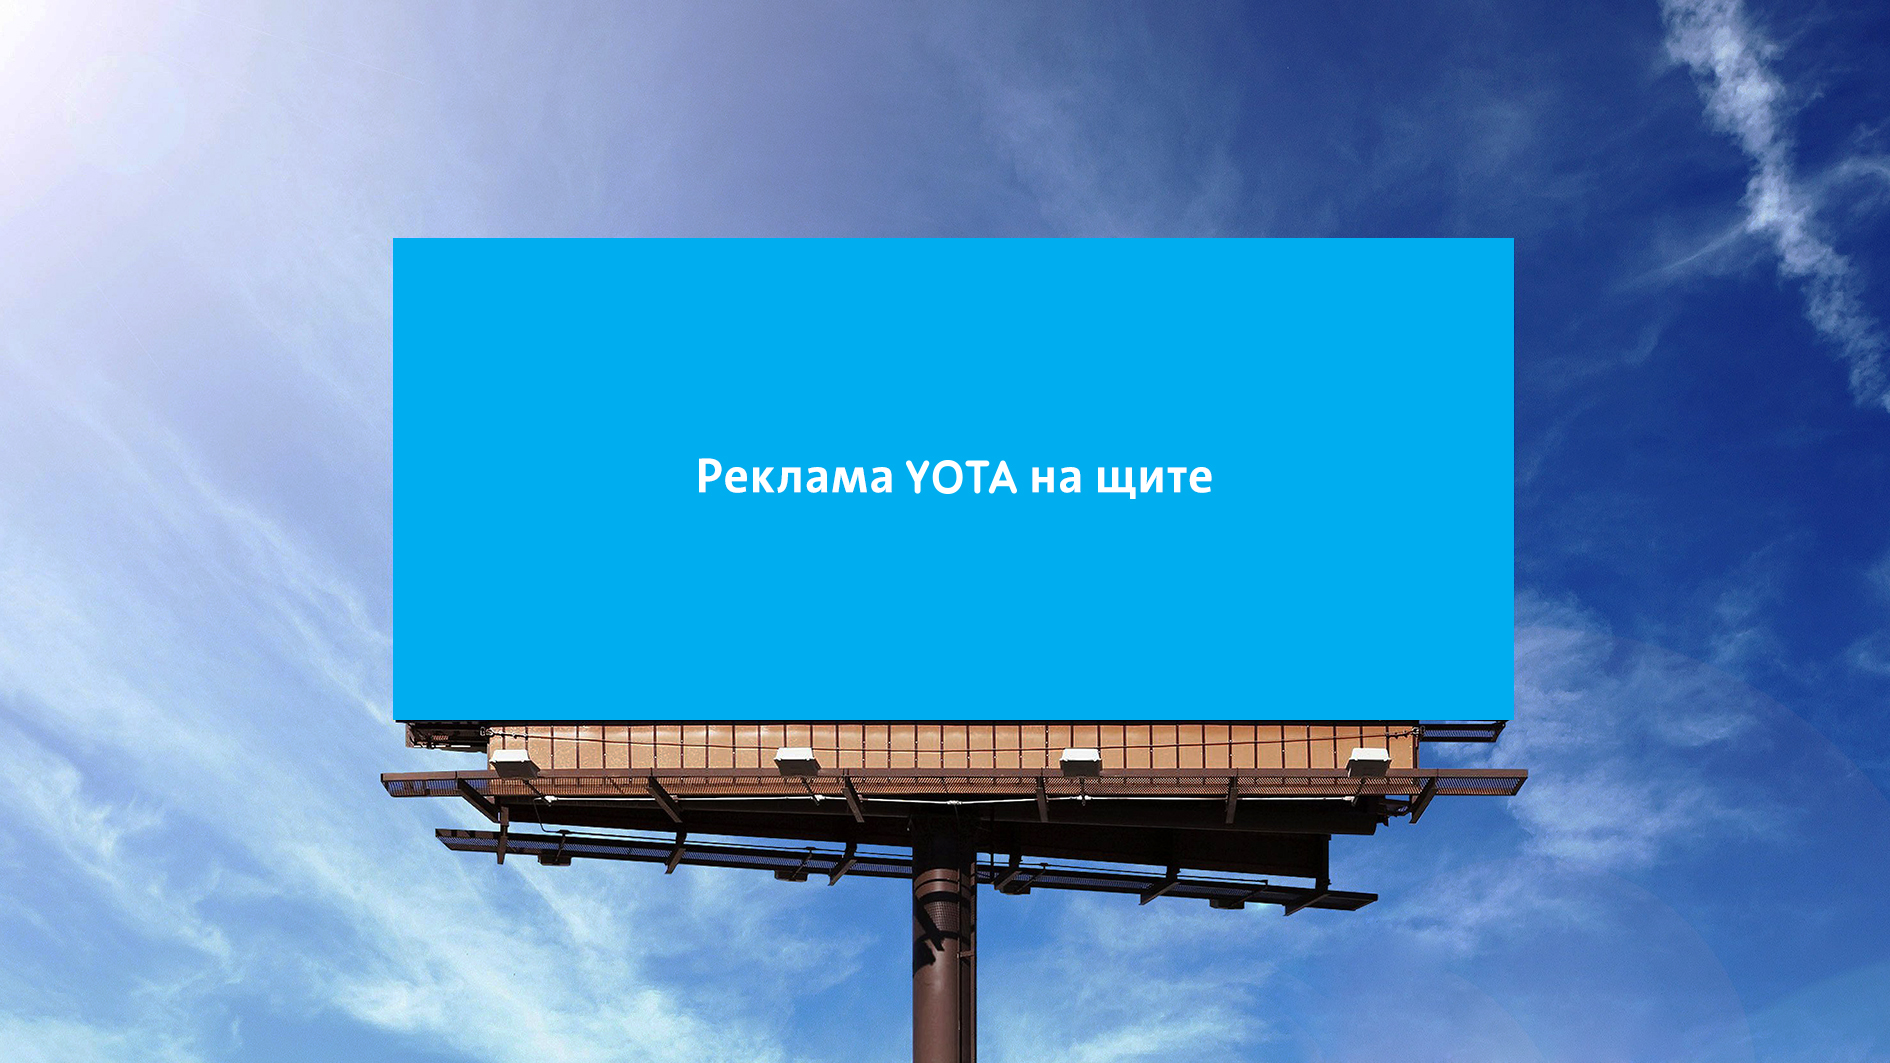 Просто реклама 1 1. Реклама Yota. Наружная реклама йота. Билборд йота. Реклама Yota на щите.